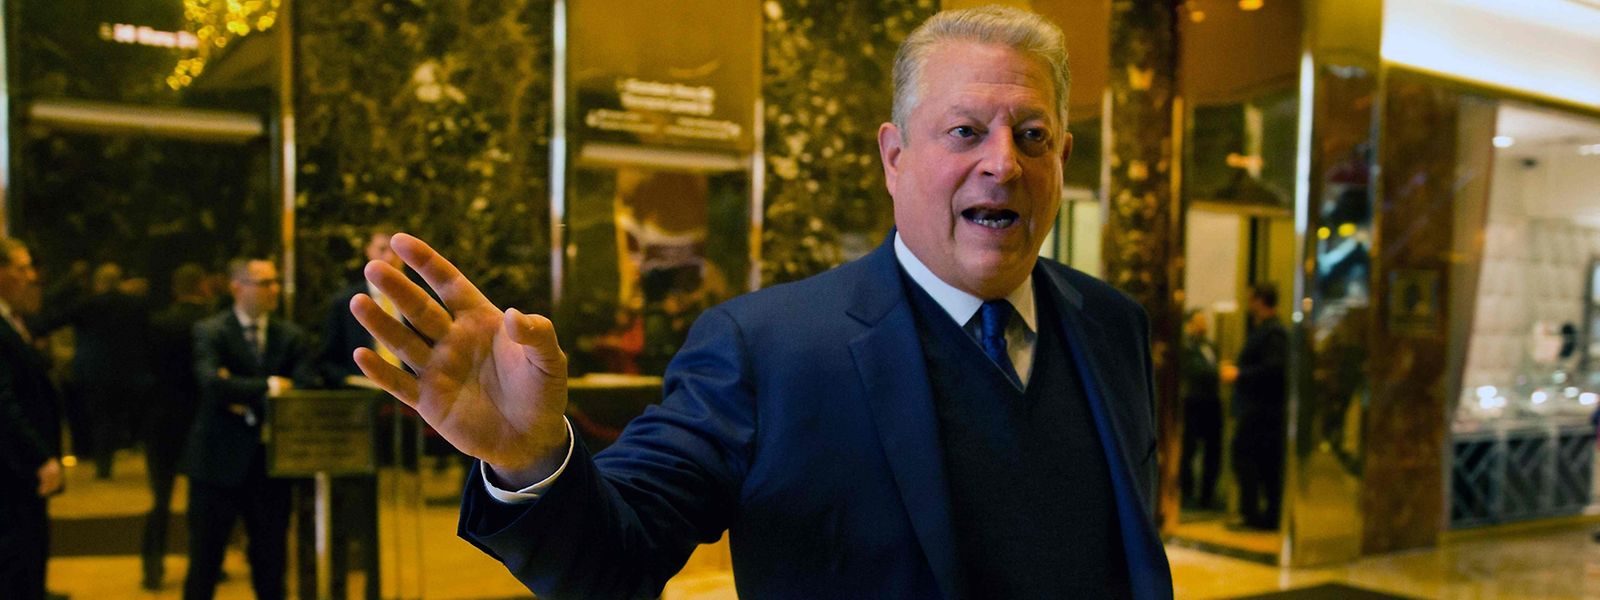 Vor dem zurzeit berühmtesten Aufzug der Welt: Al Gore im Foyer des Trump Tower.